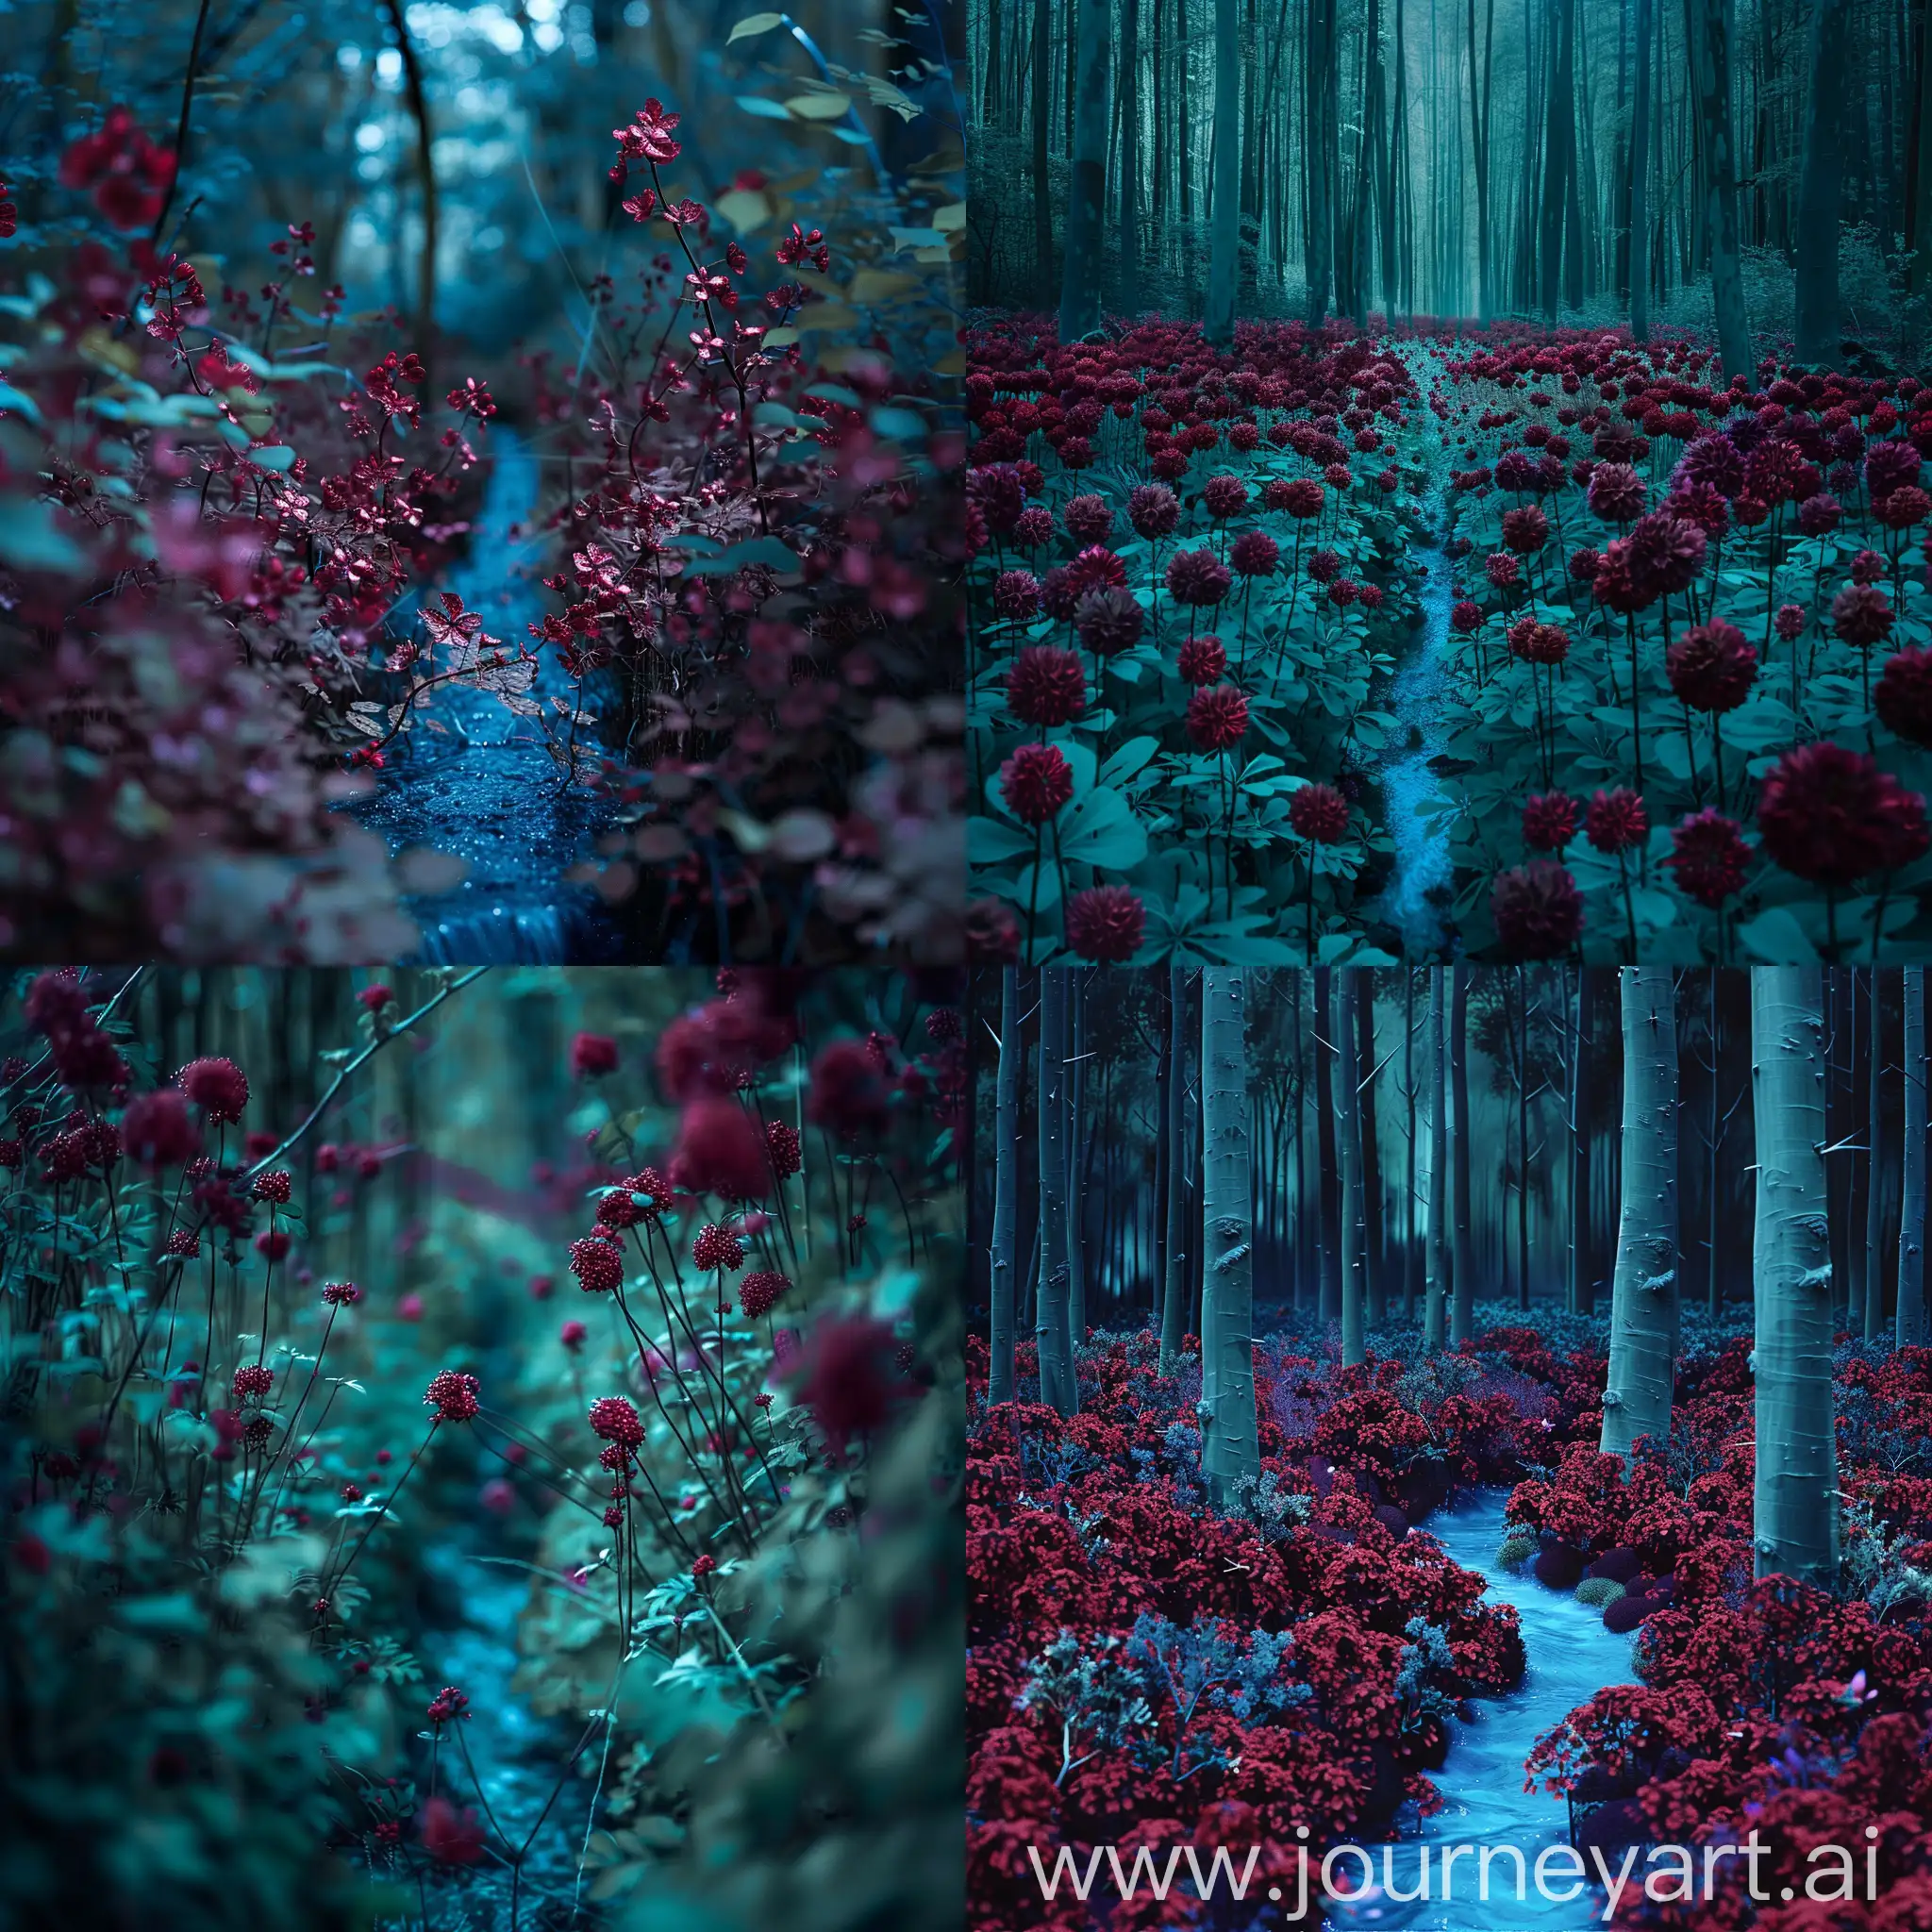 Маленькие бордовые очень густо растущие цветочки в сине- зеленом лесу, посреди них течет очень тонкий голубой ручеек, профессиональное фото, фотореализм, ultraHD